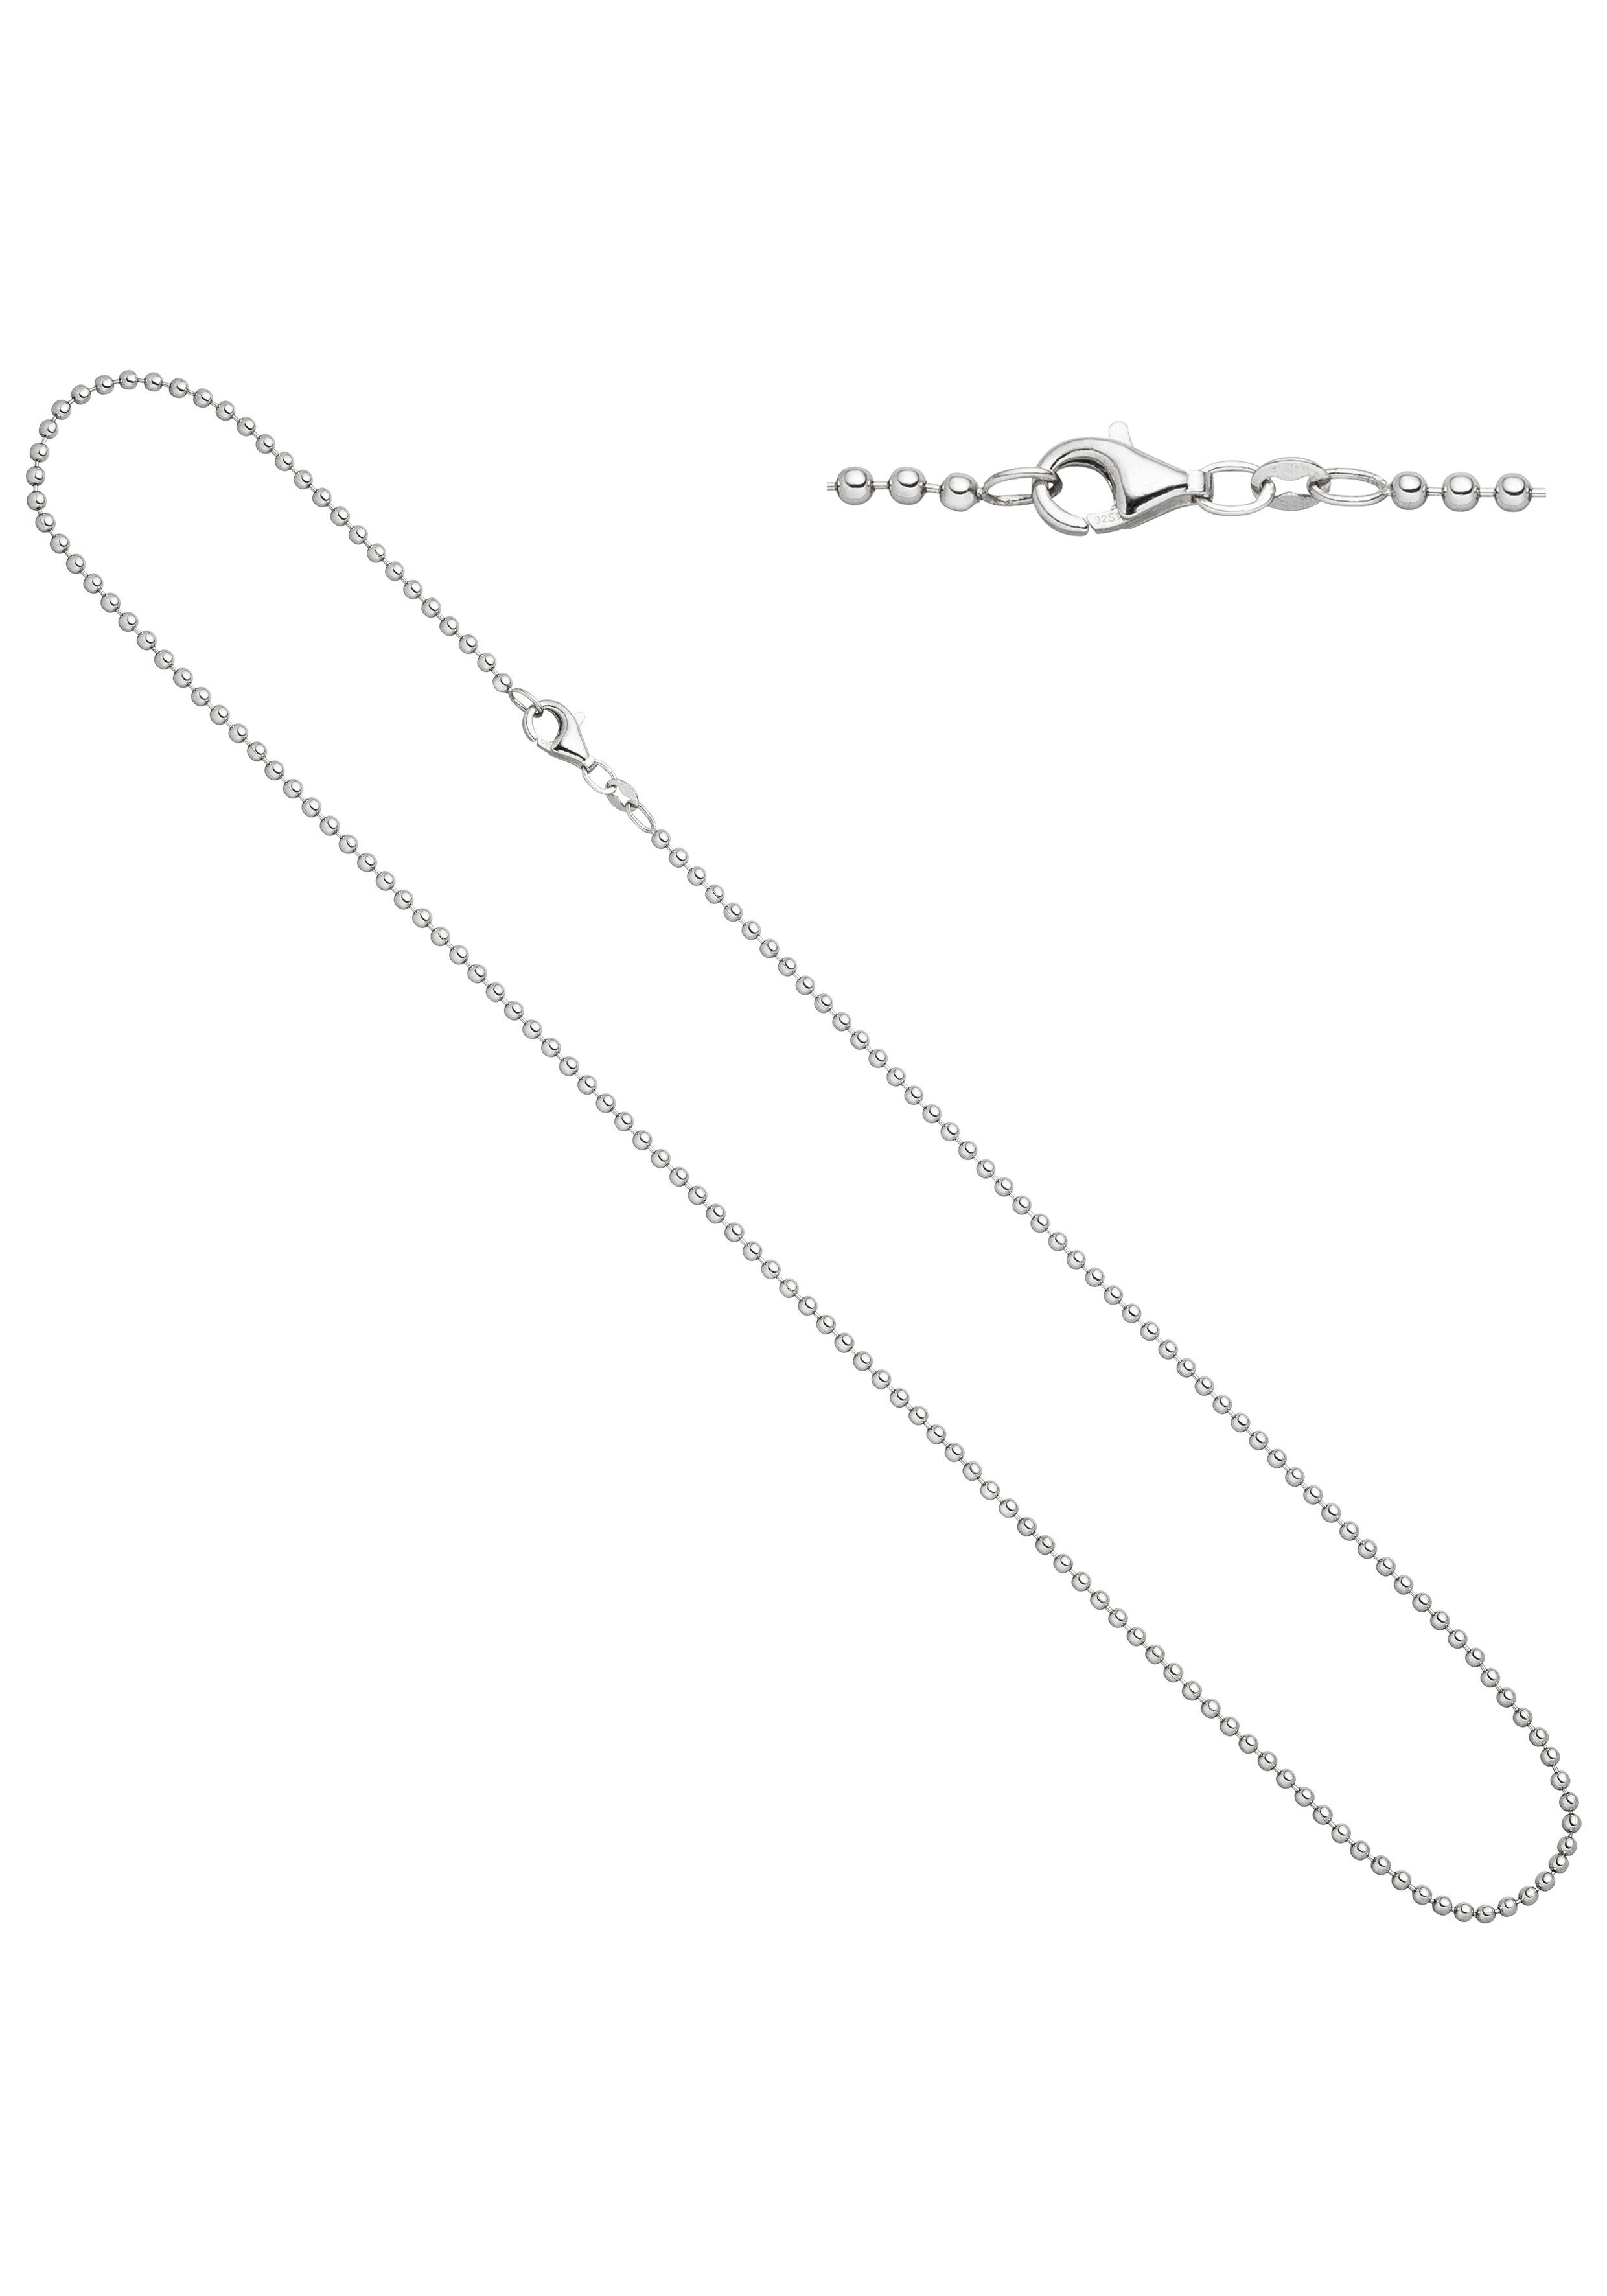 Silberkette 925 Silber Ø 2,2 mm 40-90 cm Halskette rund Erbskette Kette